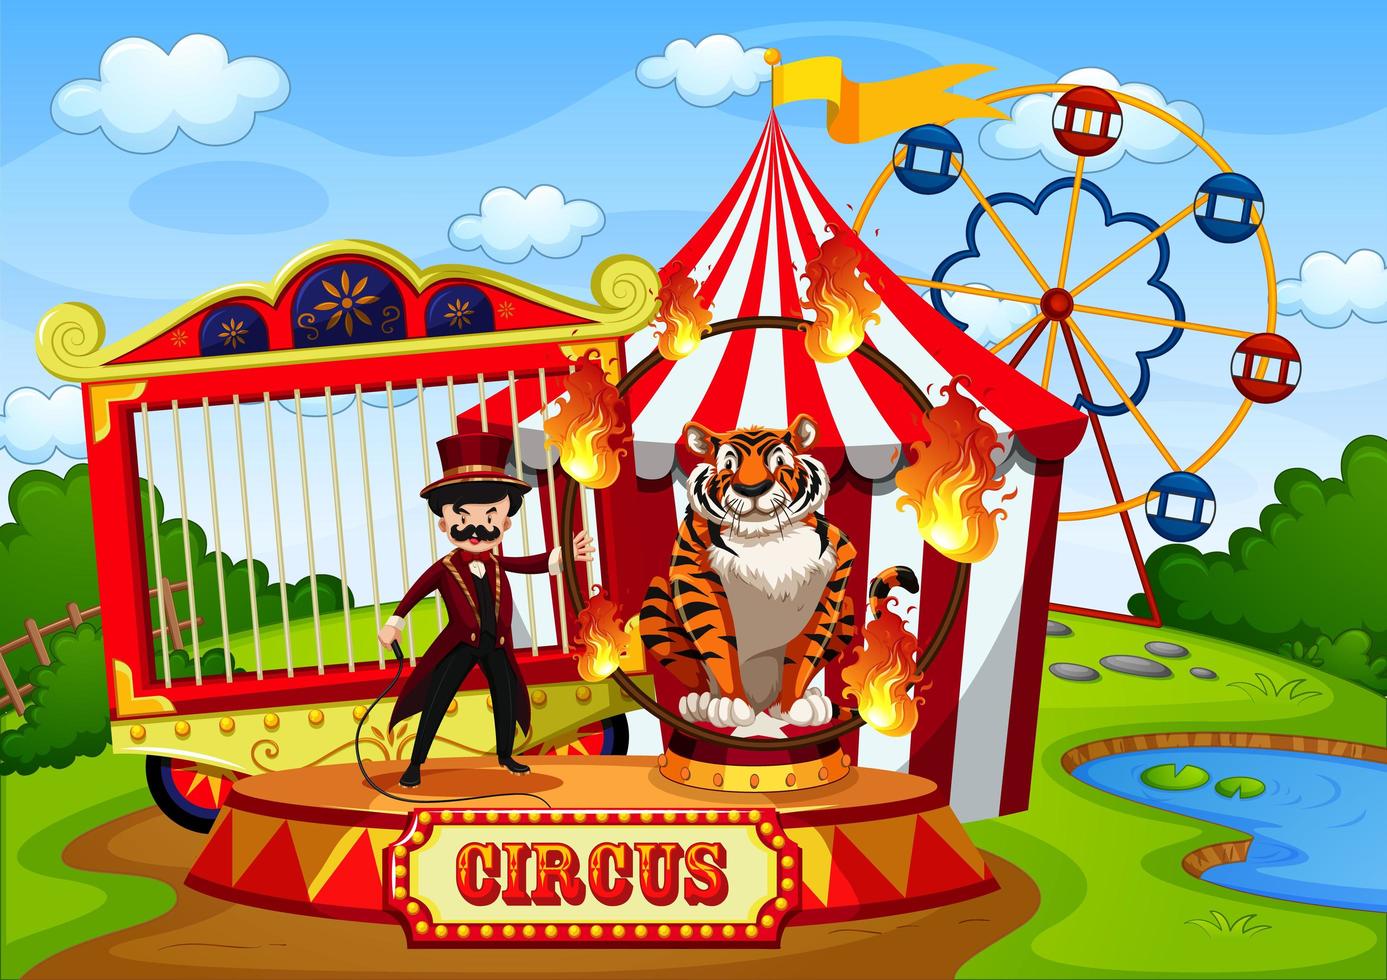 nöjespark med cirkus i tecknad stil vektor